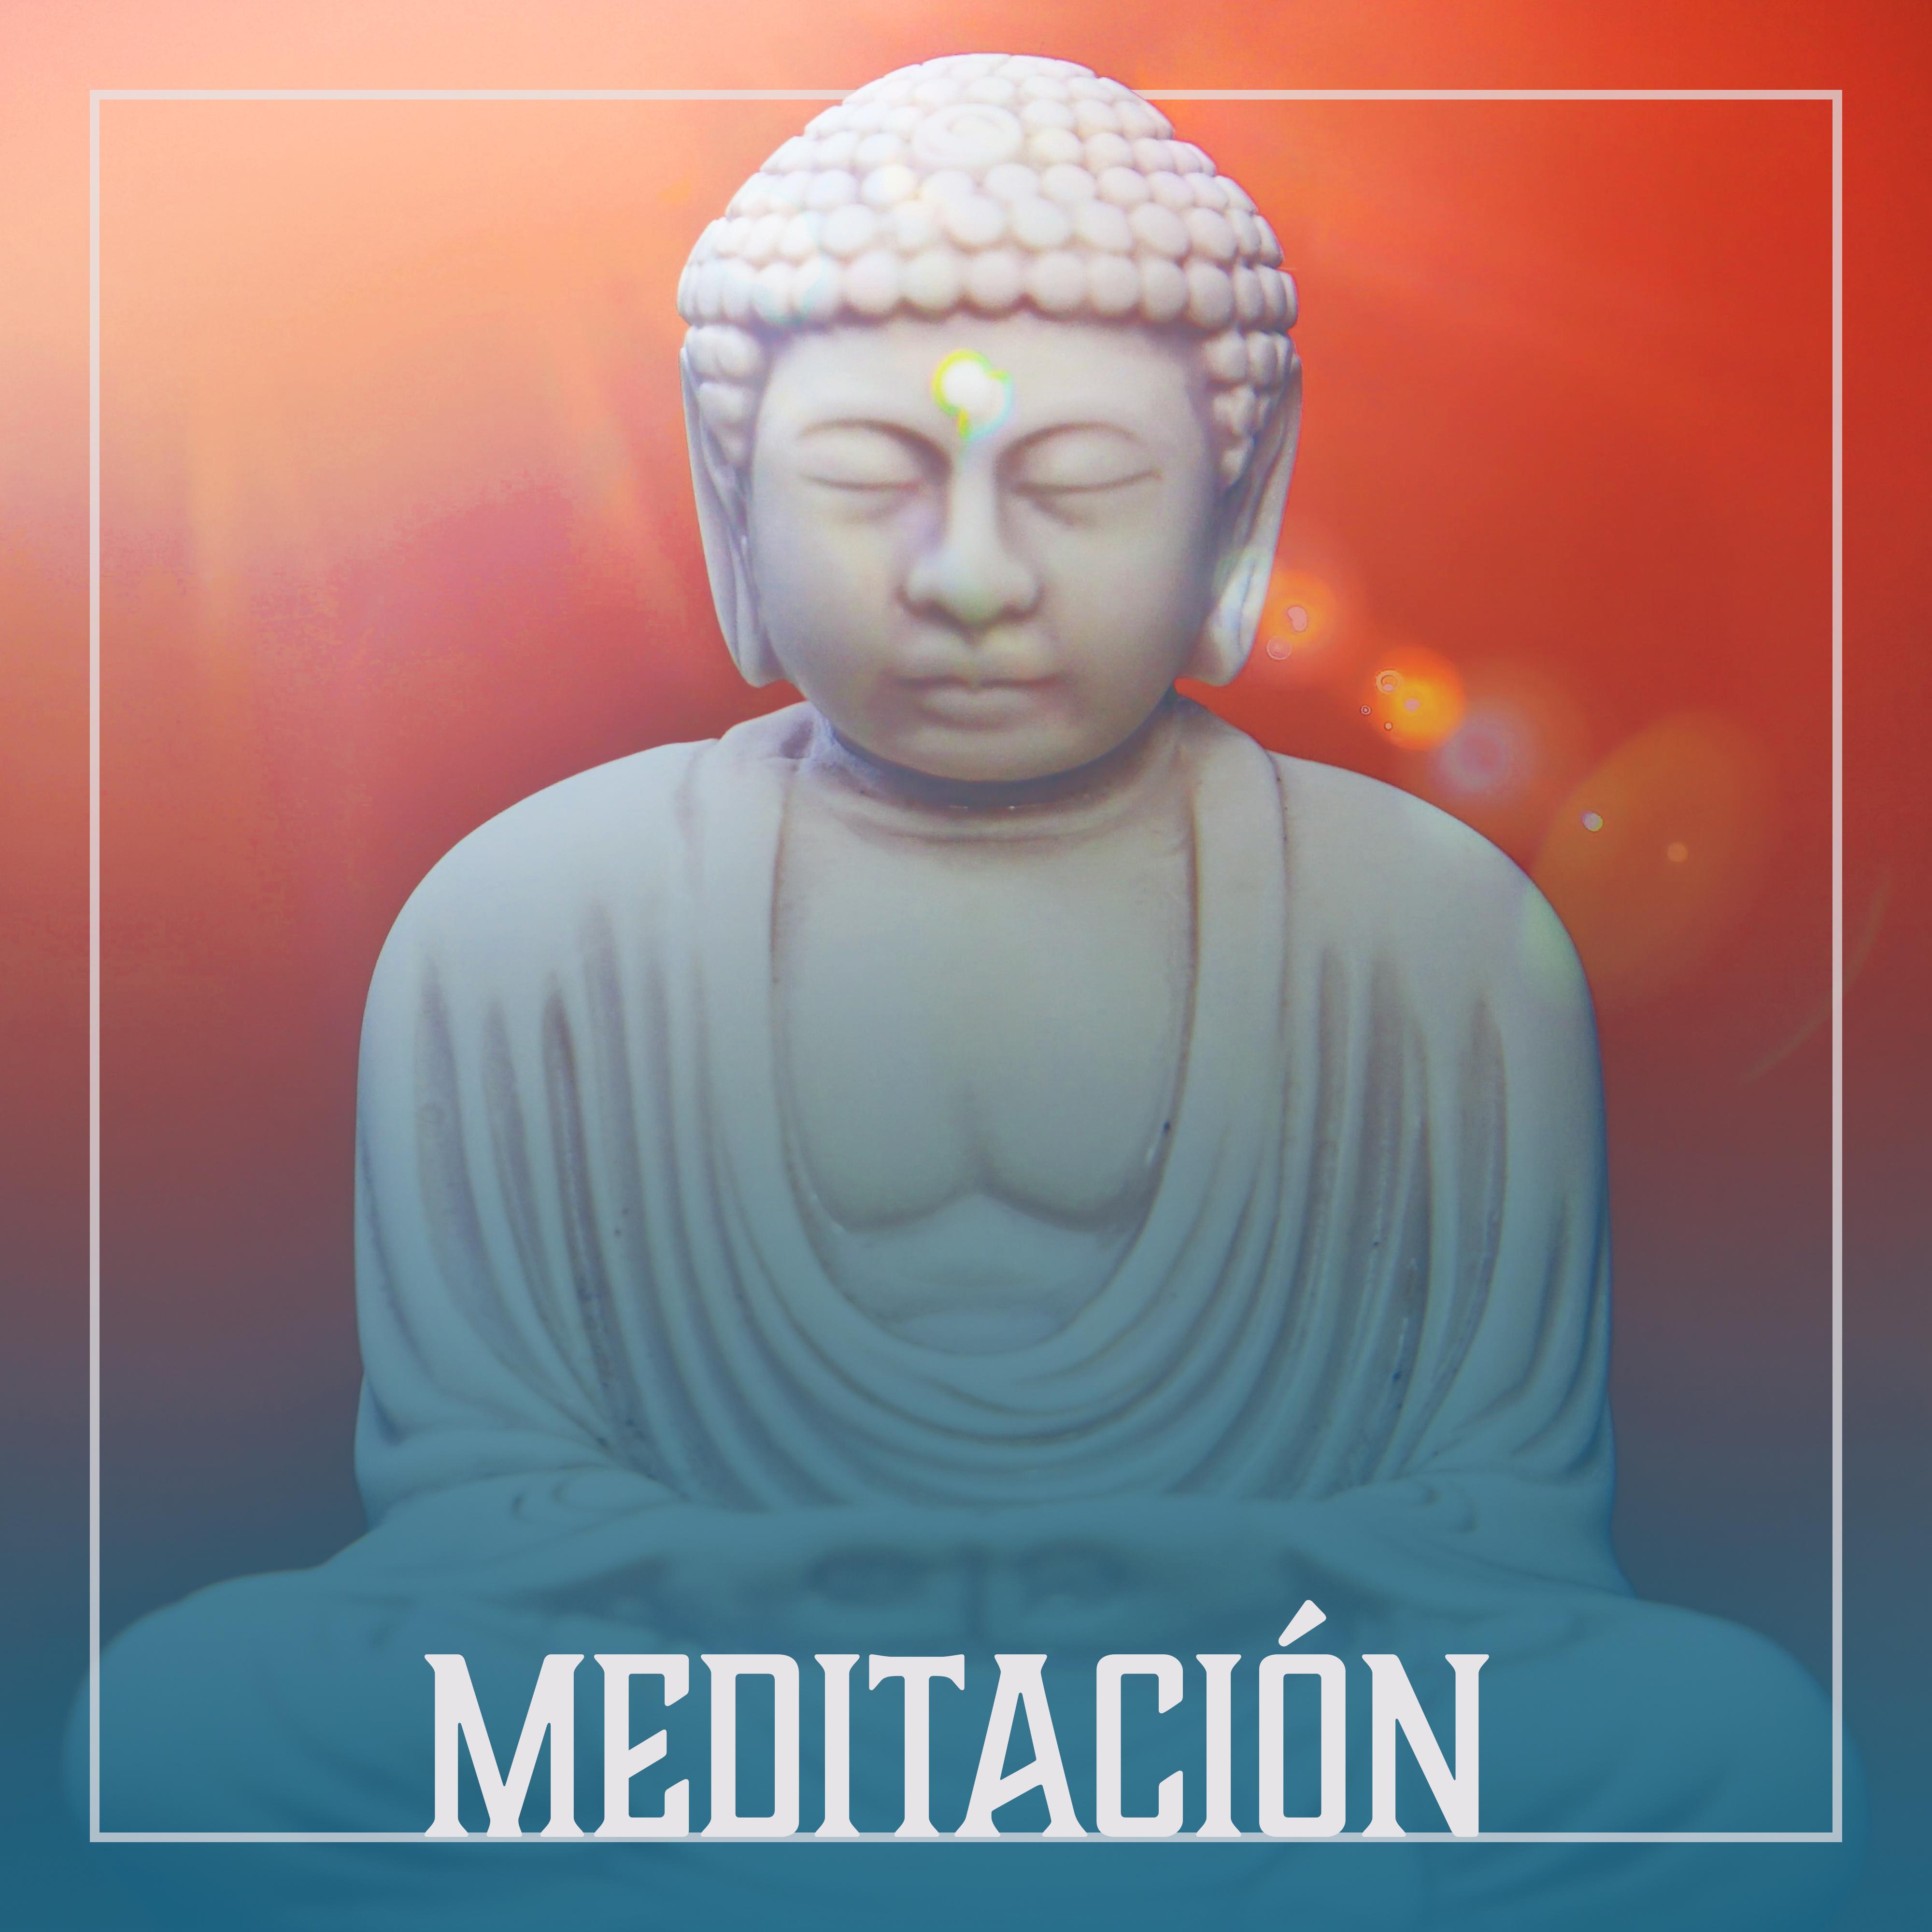 Meditación – Música de Relajación, Profunda Paz, Mente Clara, Yoga Ejercicio, Armonía, Música Reiki, Concentración, Sonidos de la Naturaleza